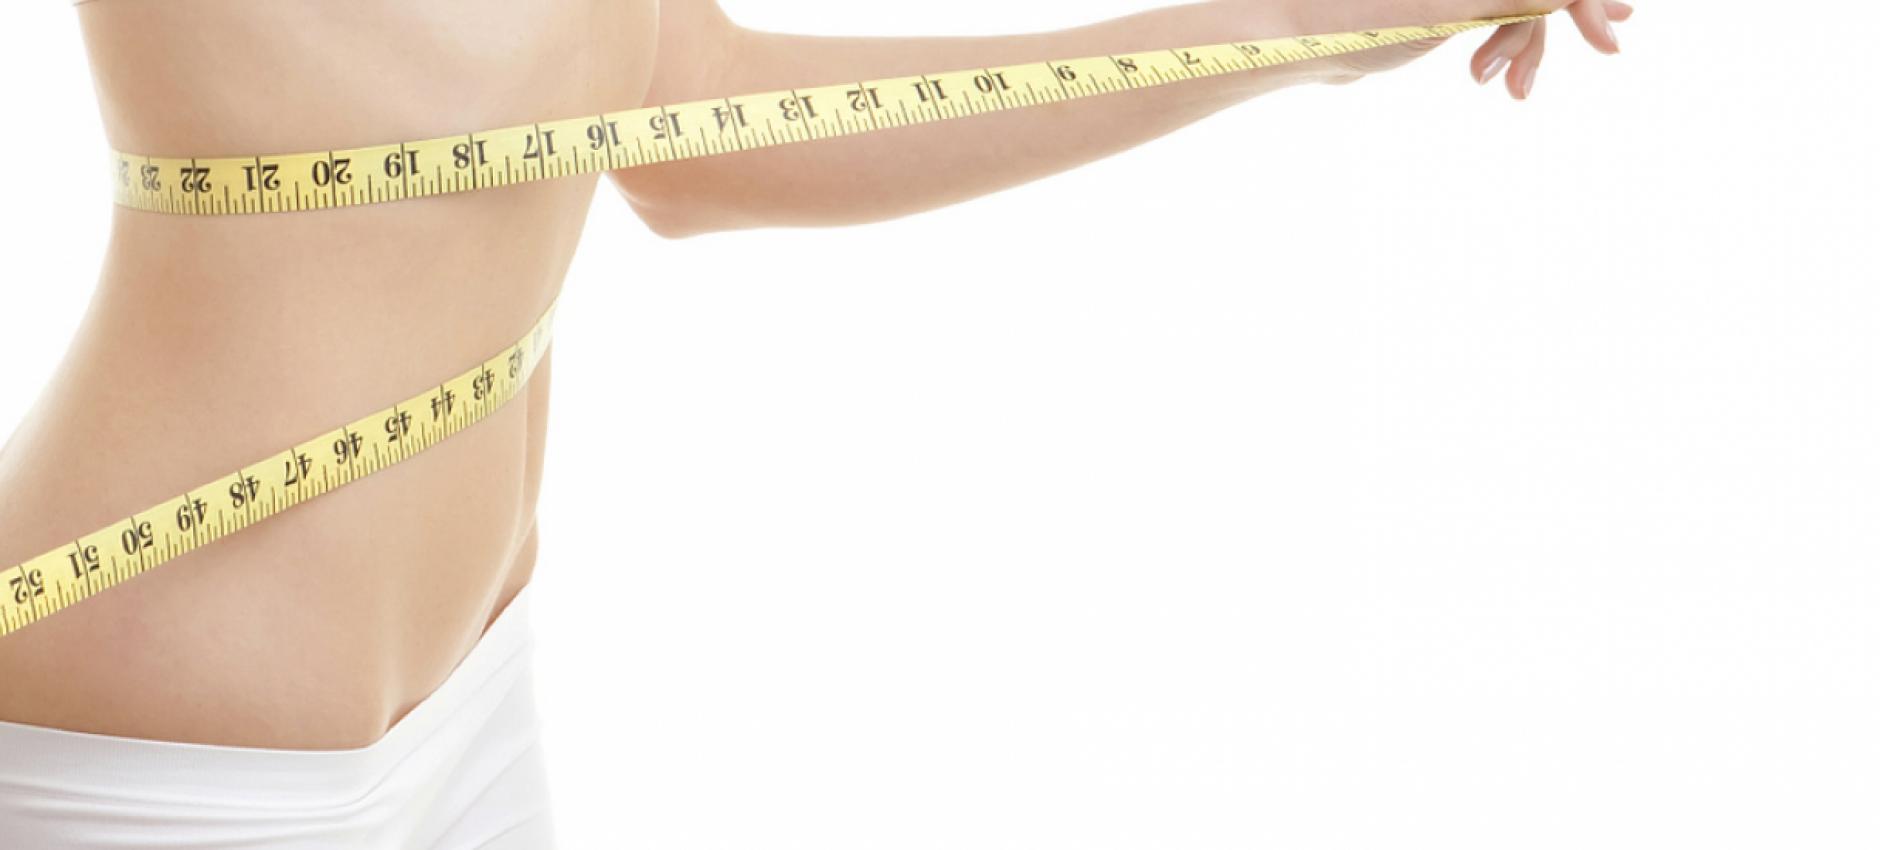 Πώς μπορεί η ψυχολογία σας να βοηθήσει το σώμα σας να χάσει βάρος